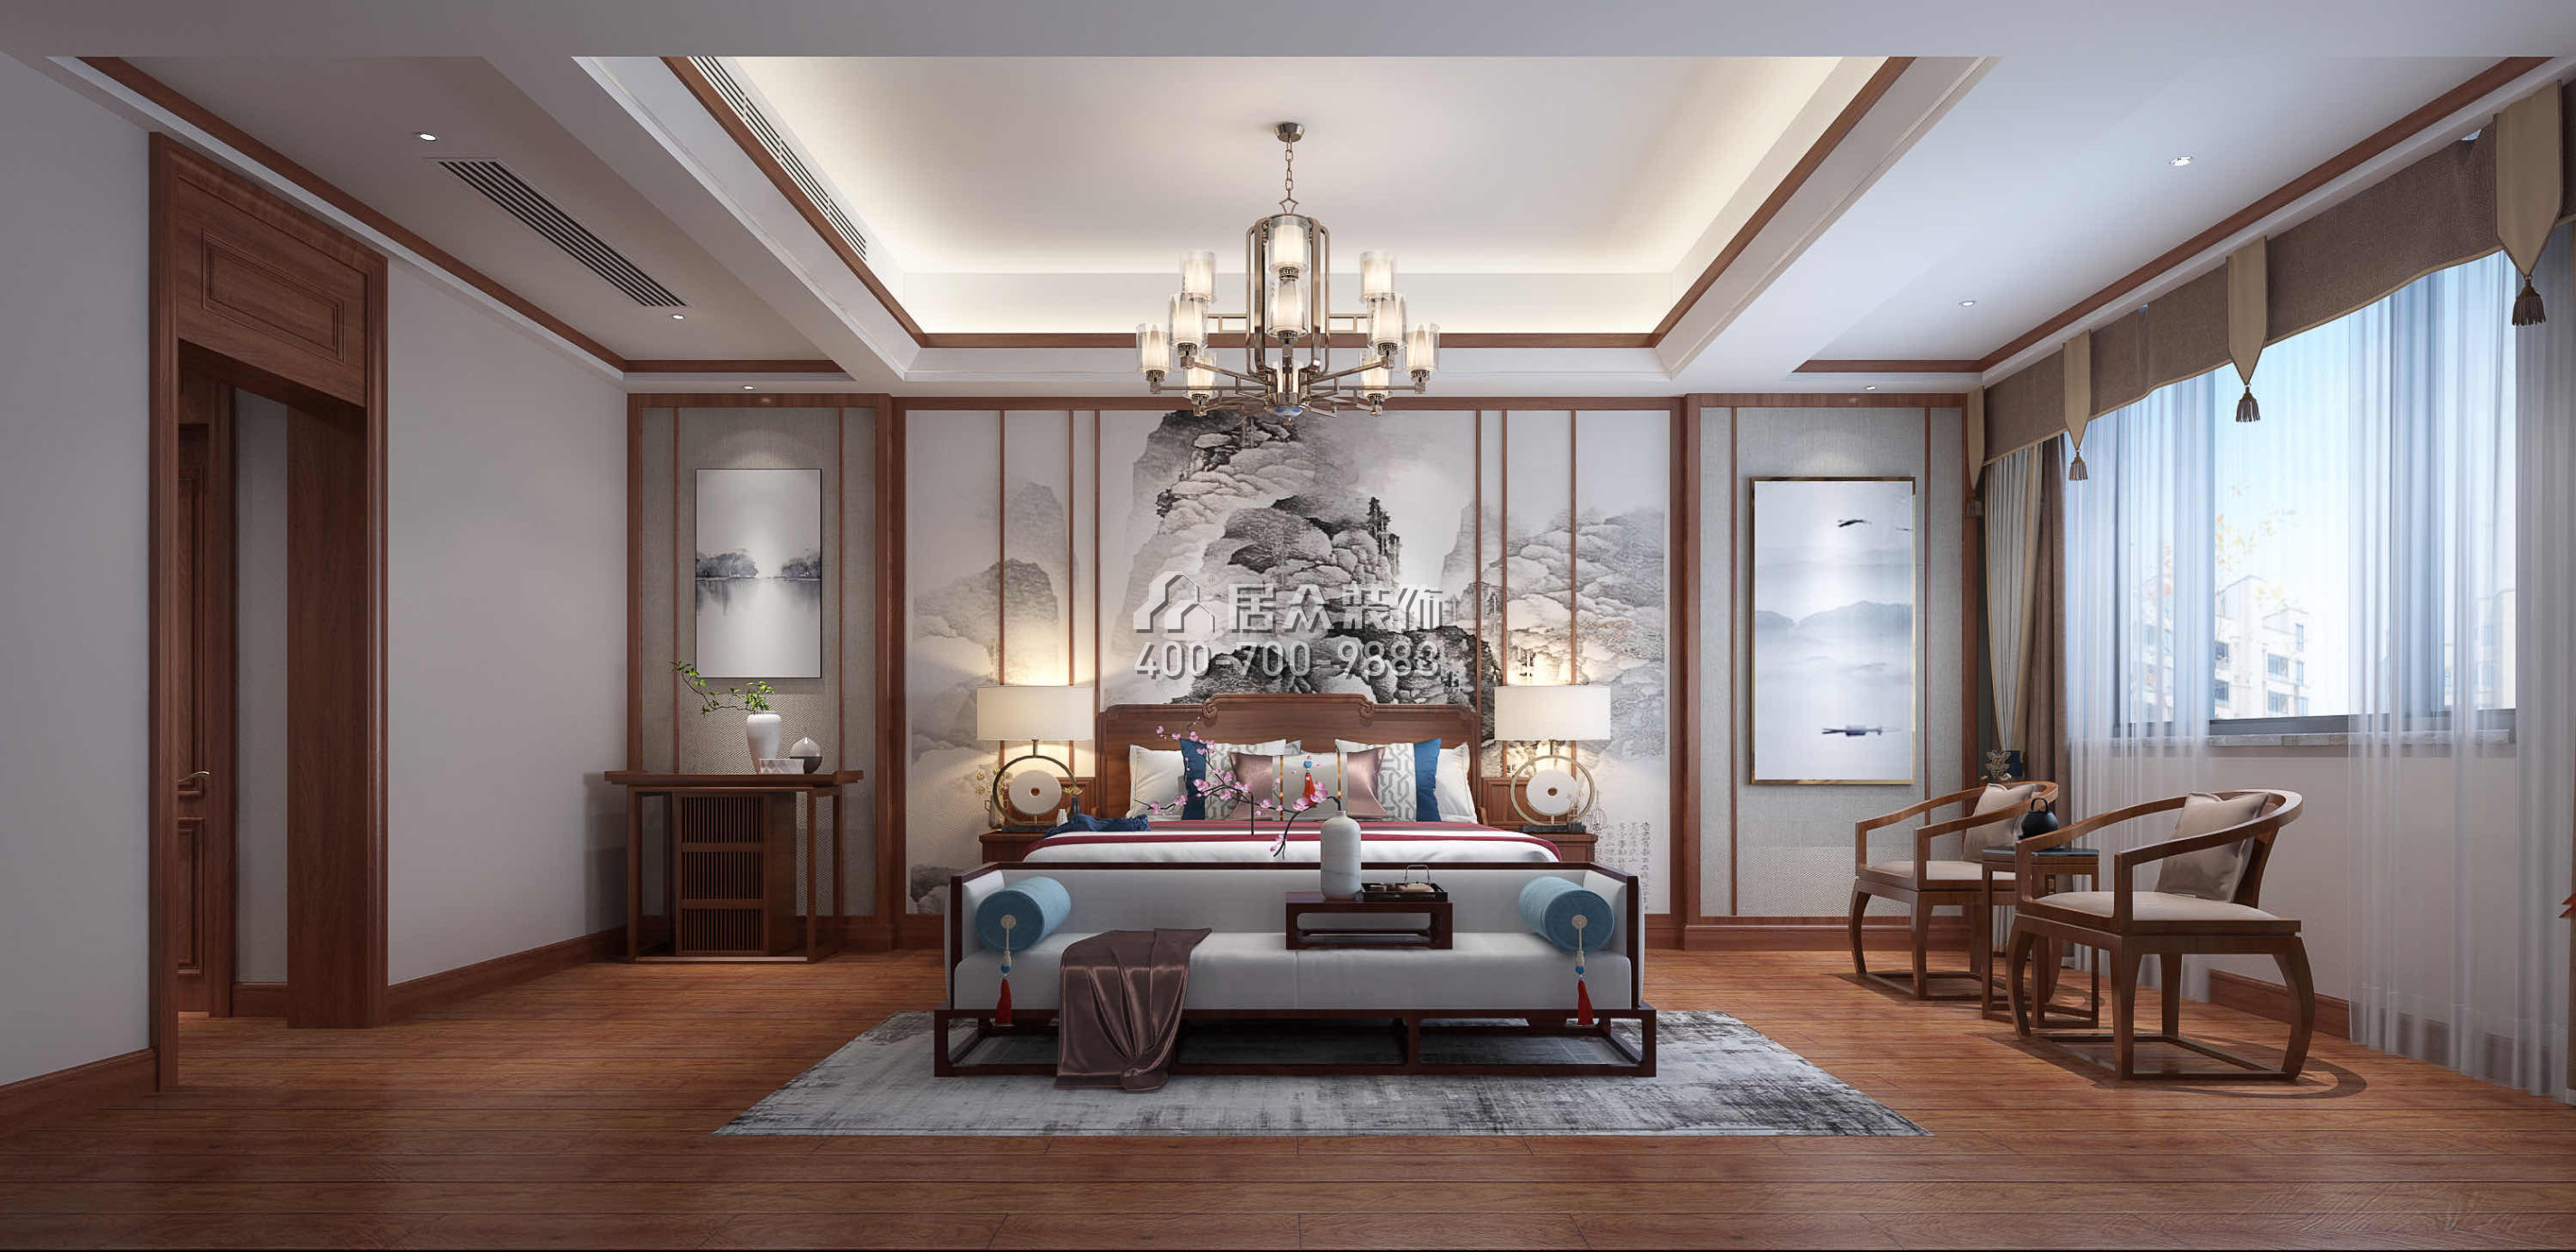 万丰上院600平方米中式风格别墅户型卧室装修效果图